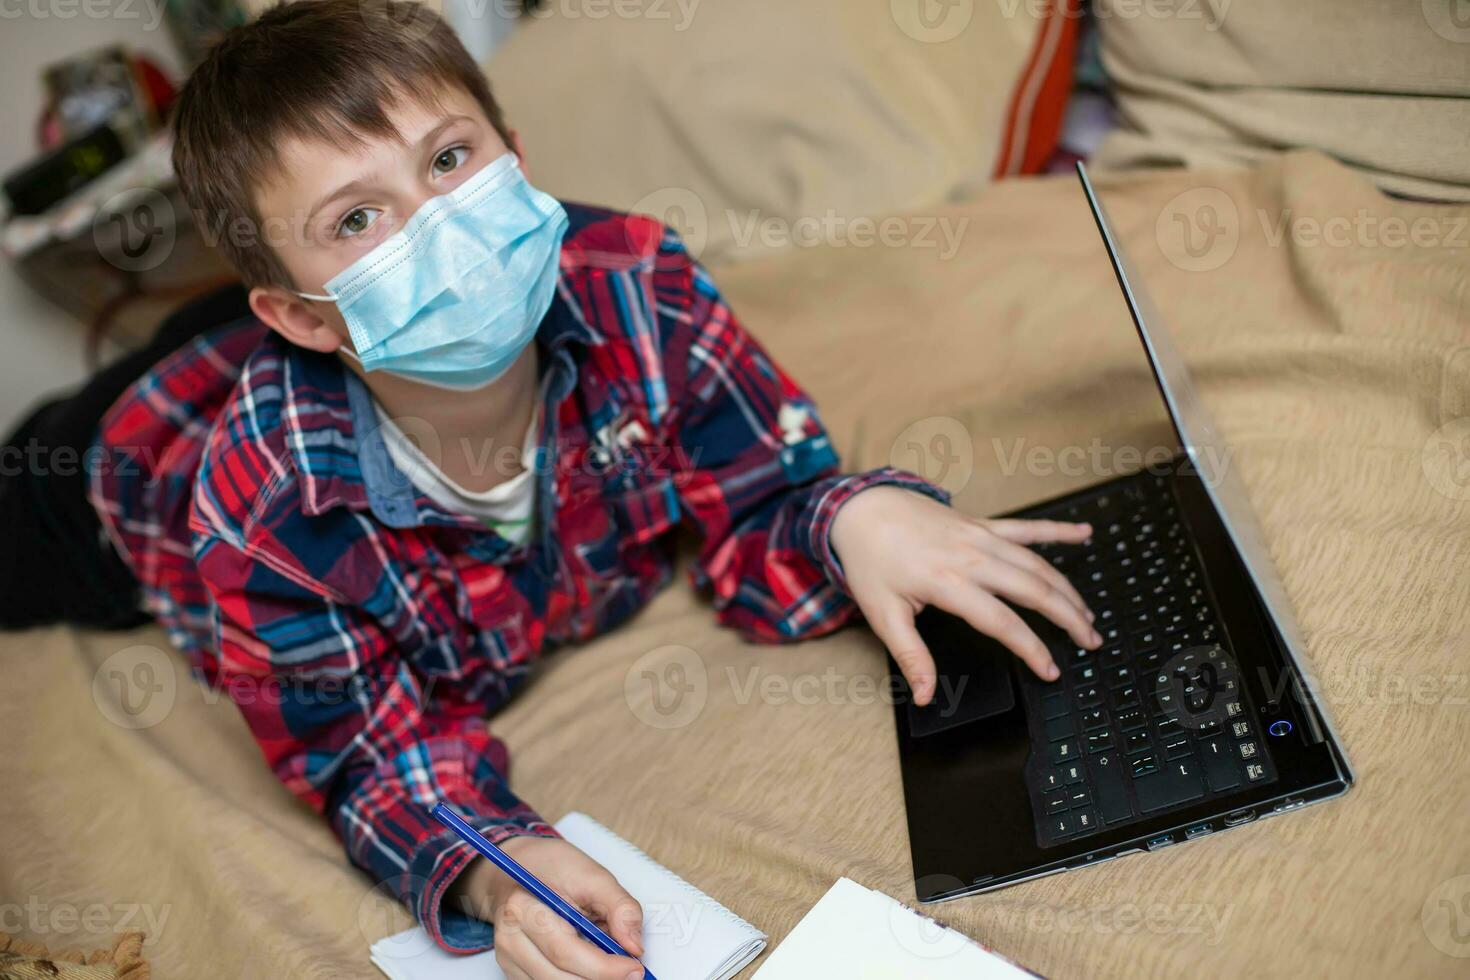 jongen in beschermend medisch masker leugens in de buurt laptop en schrijft in werk boek. kind doet lessen aan het kijken online uitzending lessen Aan internetten. e-learning, afgelegen aan het studeren internet concept foto